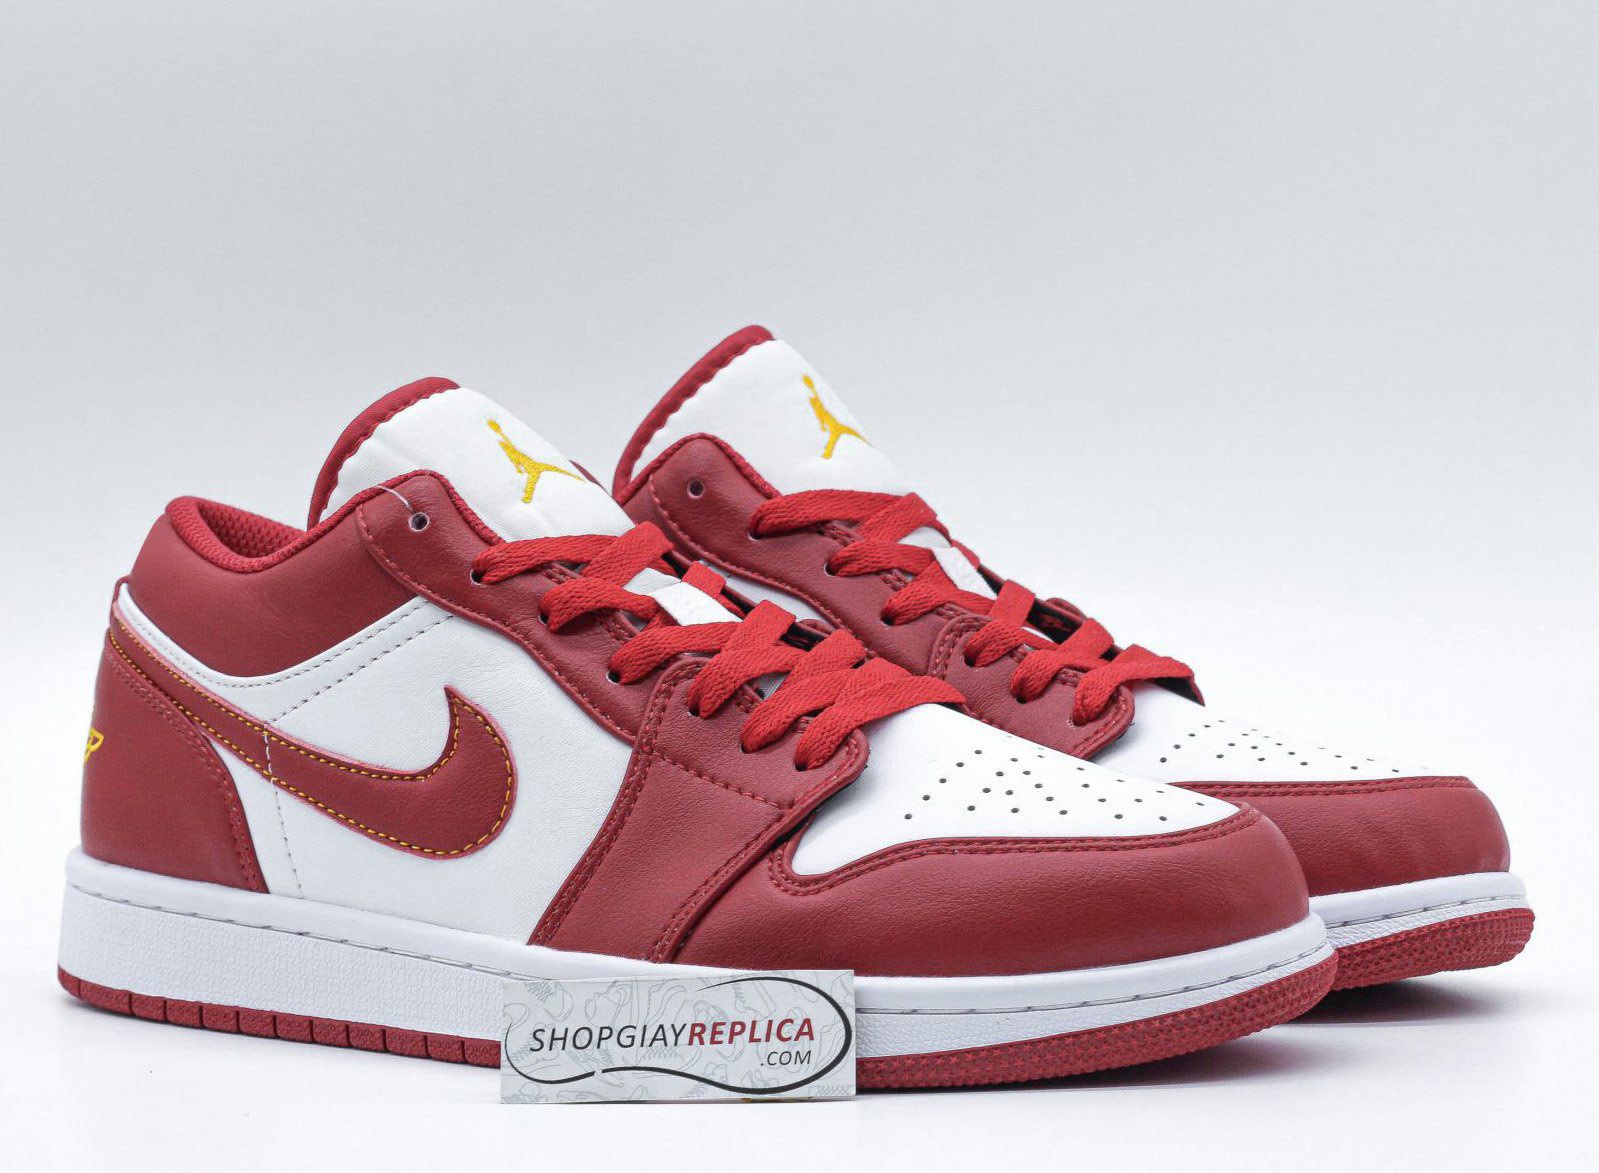 Giày Nike Air Jordan 1 Low ‘Cardinal Red’ đỏ rep 1:1